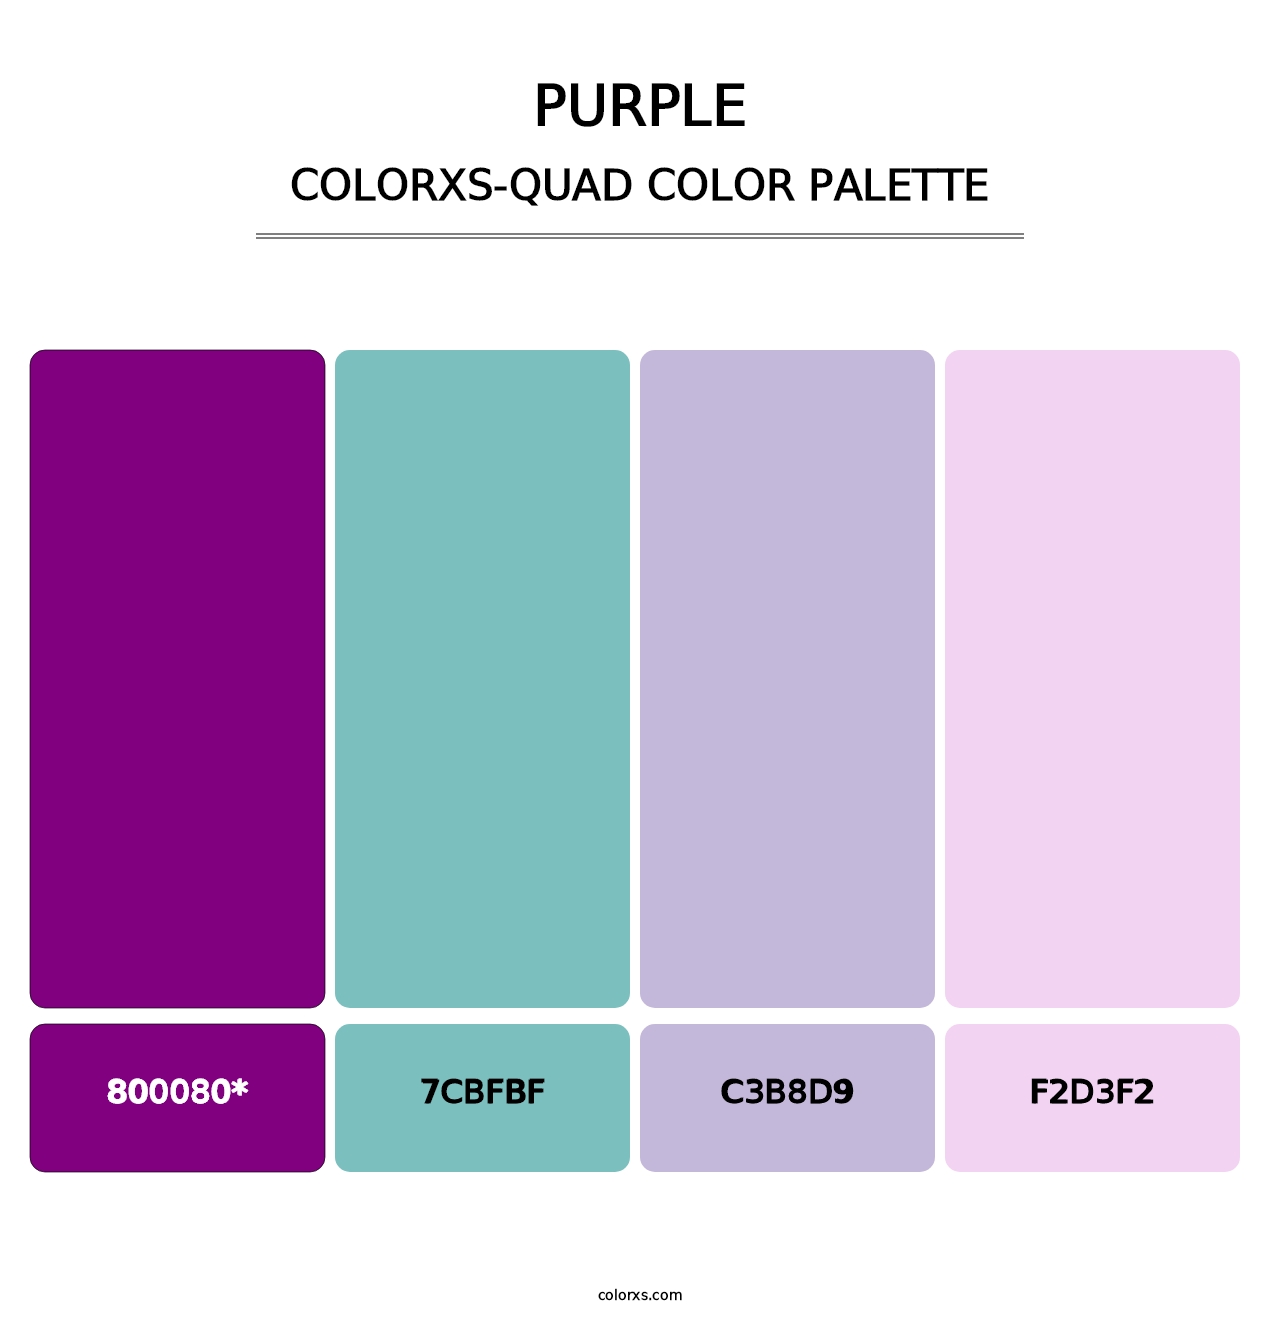 Purple - Colorxs Quad Palette